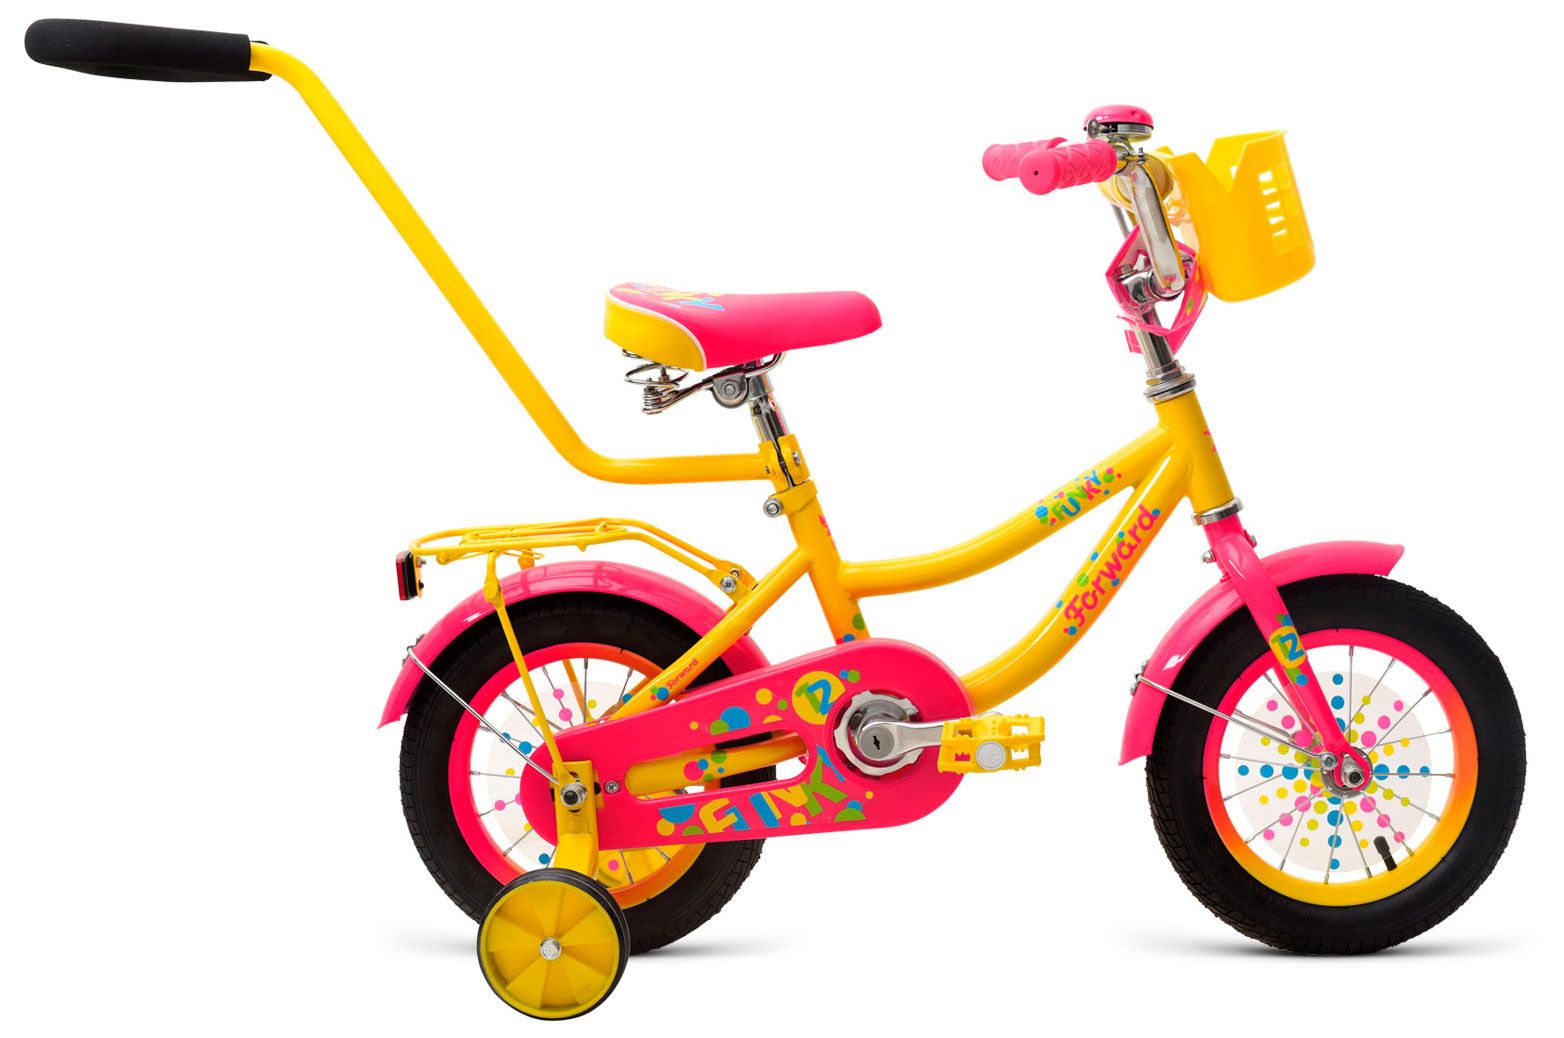  Отзывы о Трехколесный детский велосипед Forward Funky 12 2018